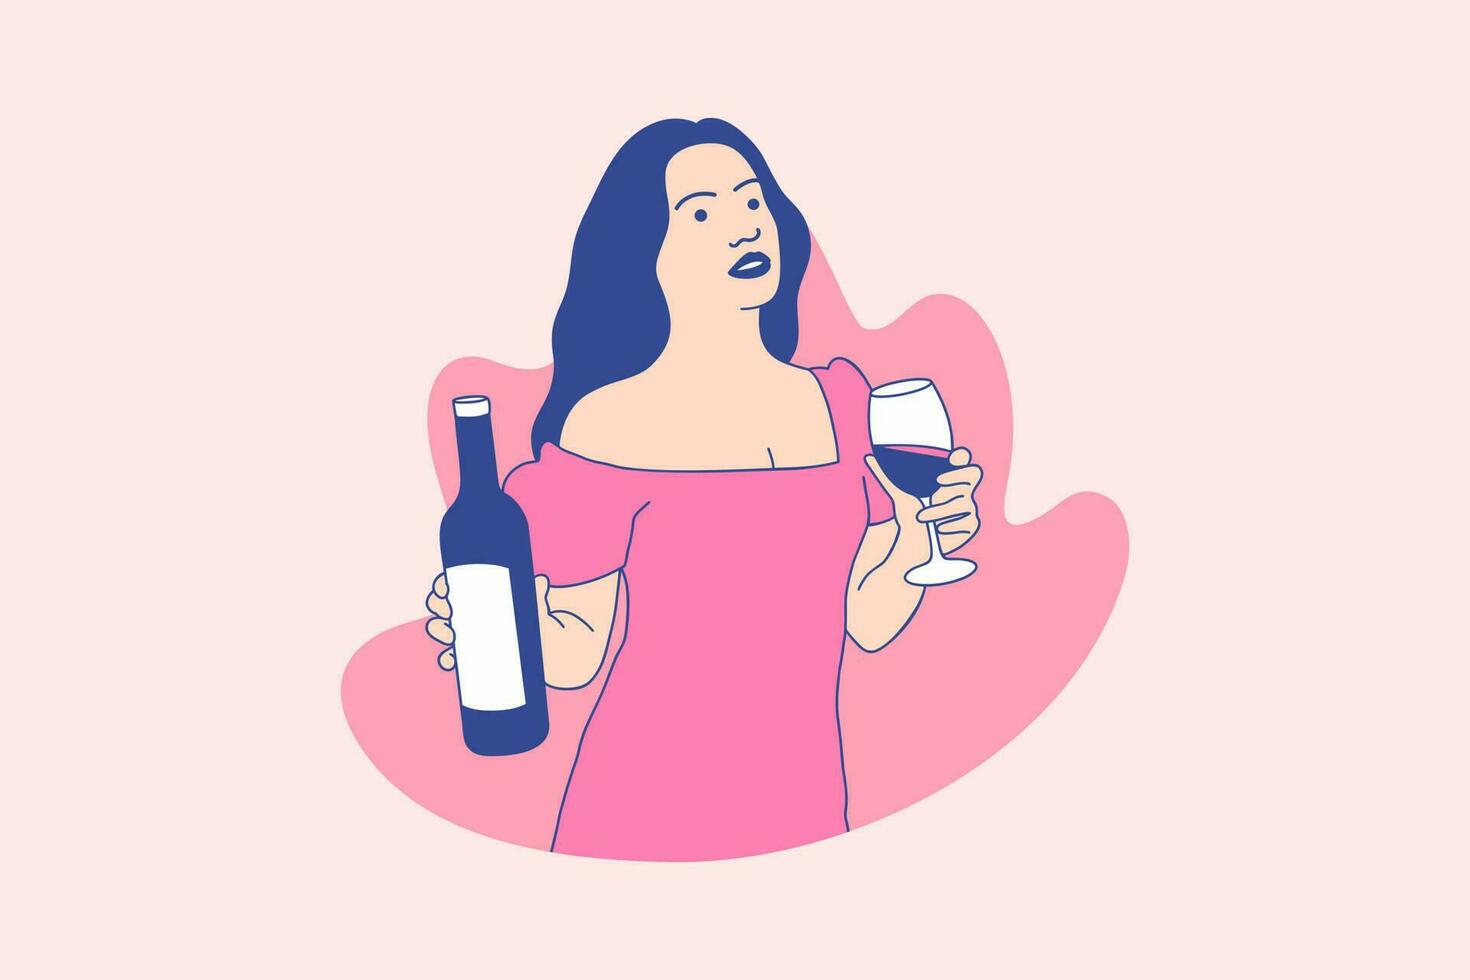 illustraties mooi vrouw genieten Holding merlot wijn voor Internationale merlot dag ontwerp concept vector